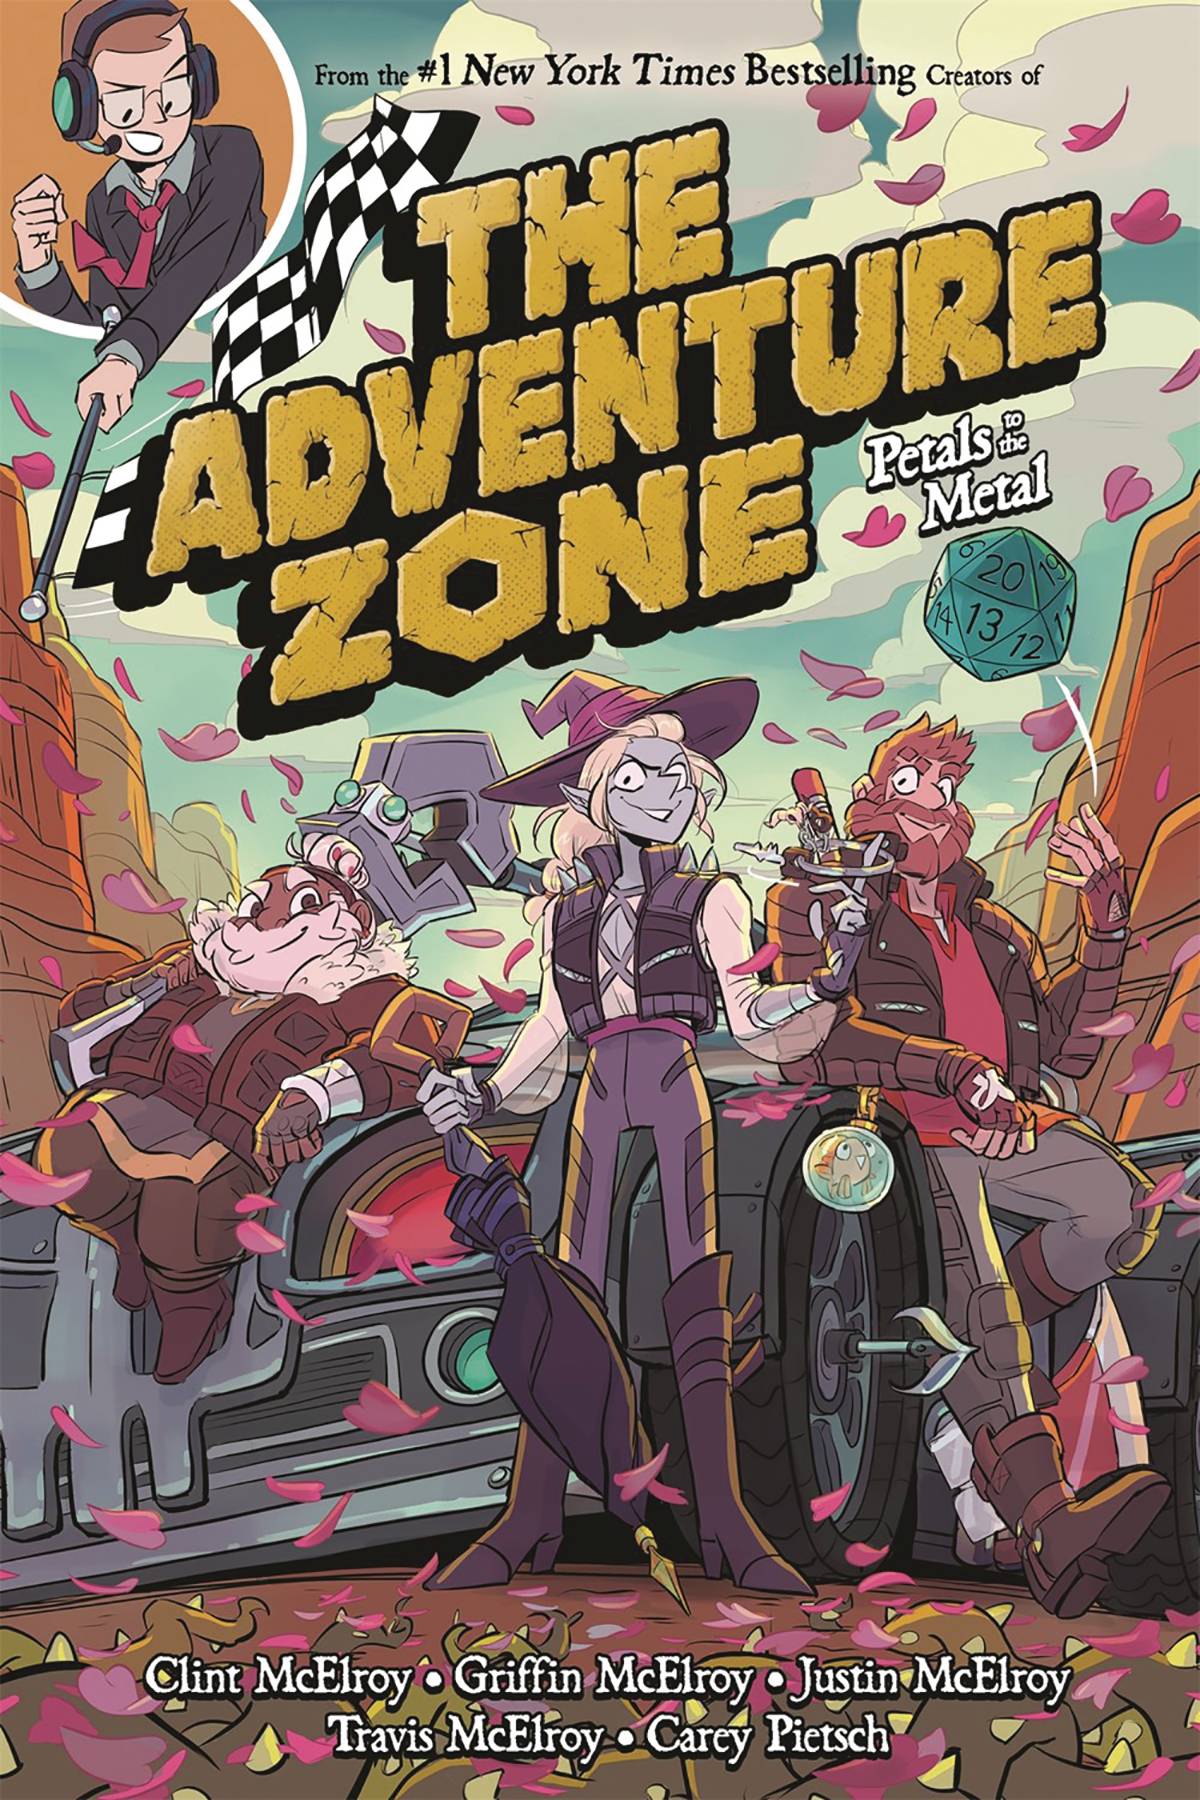 Adventure Zone Vol 03 Petals To Metal